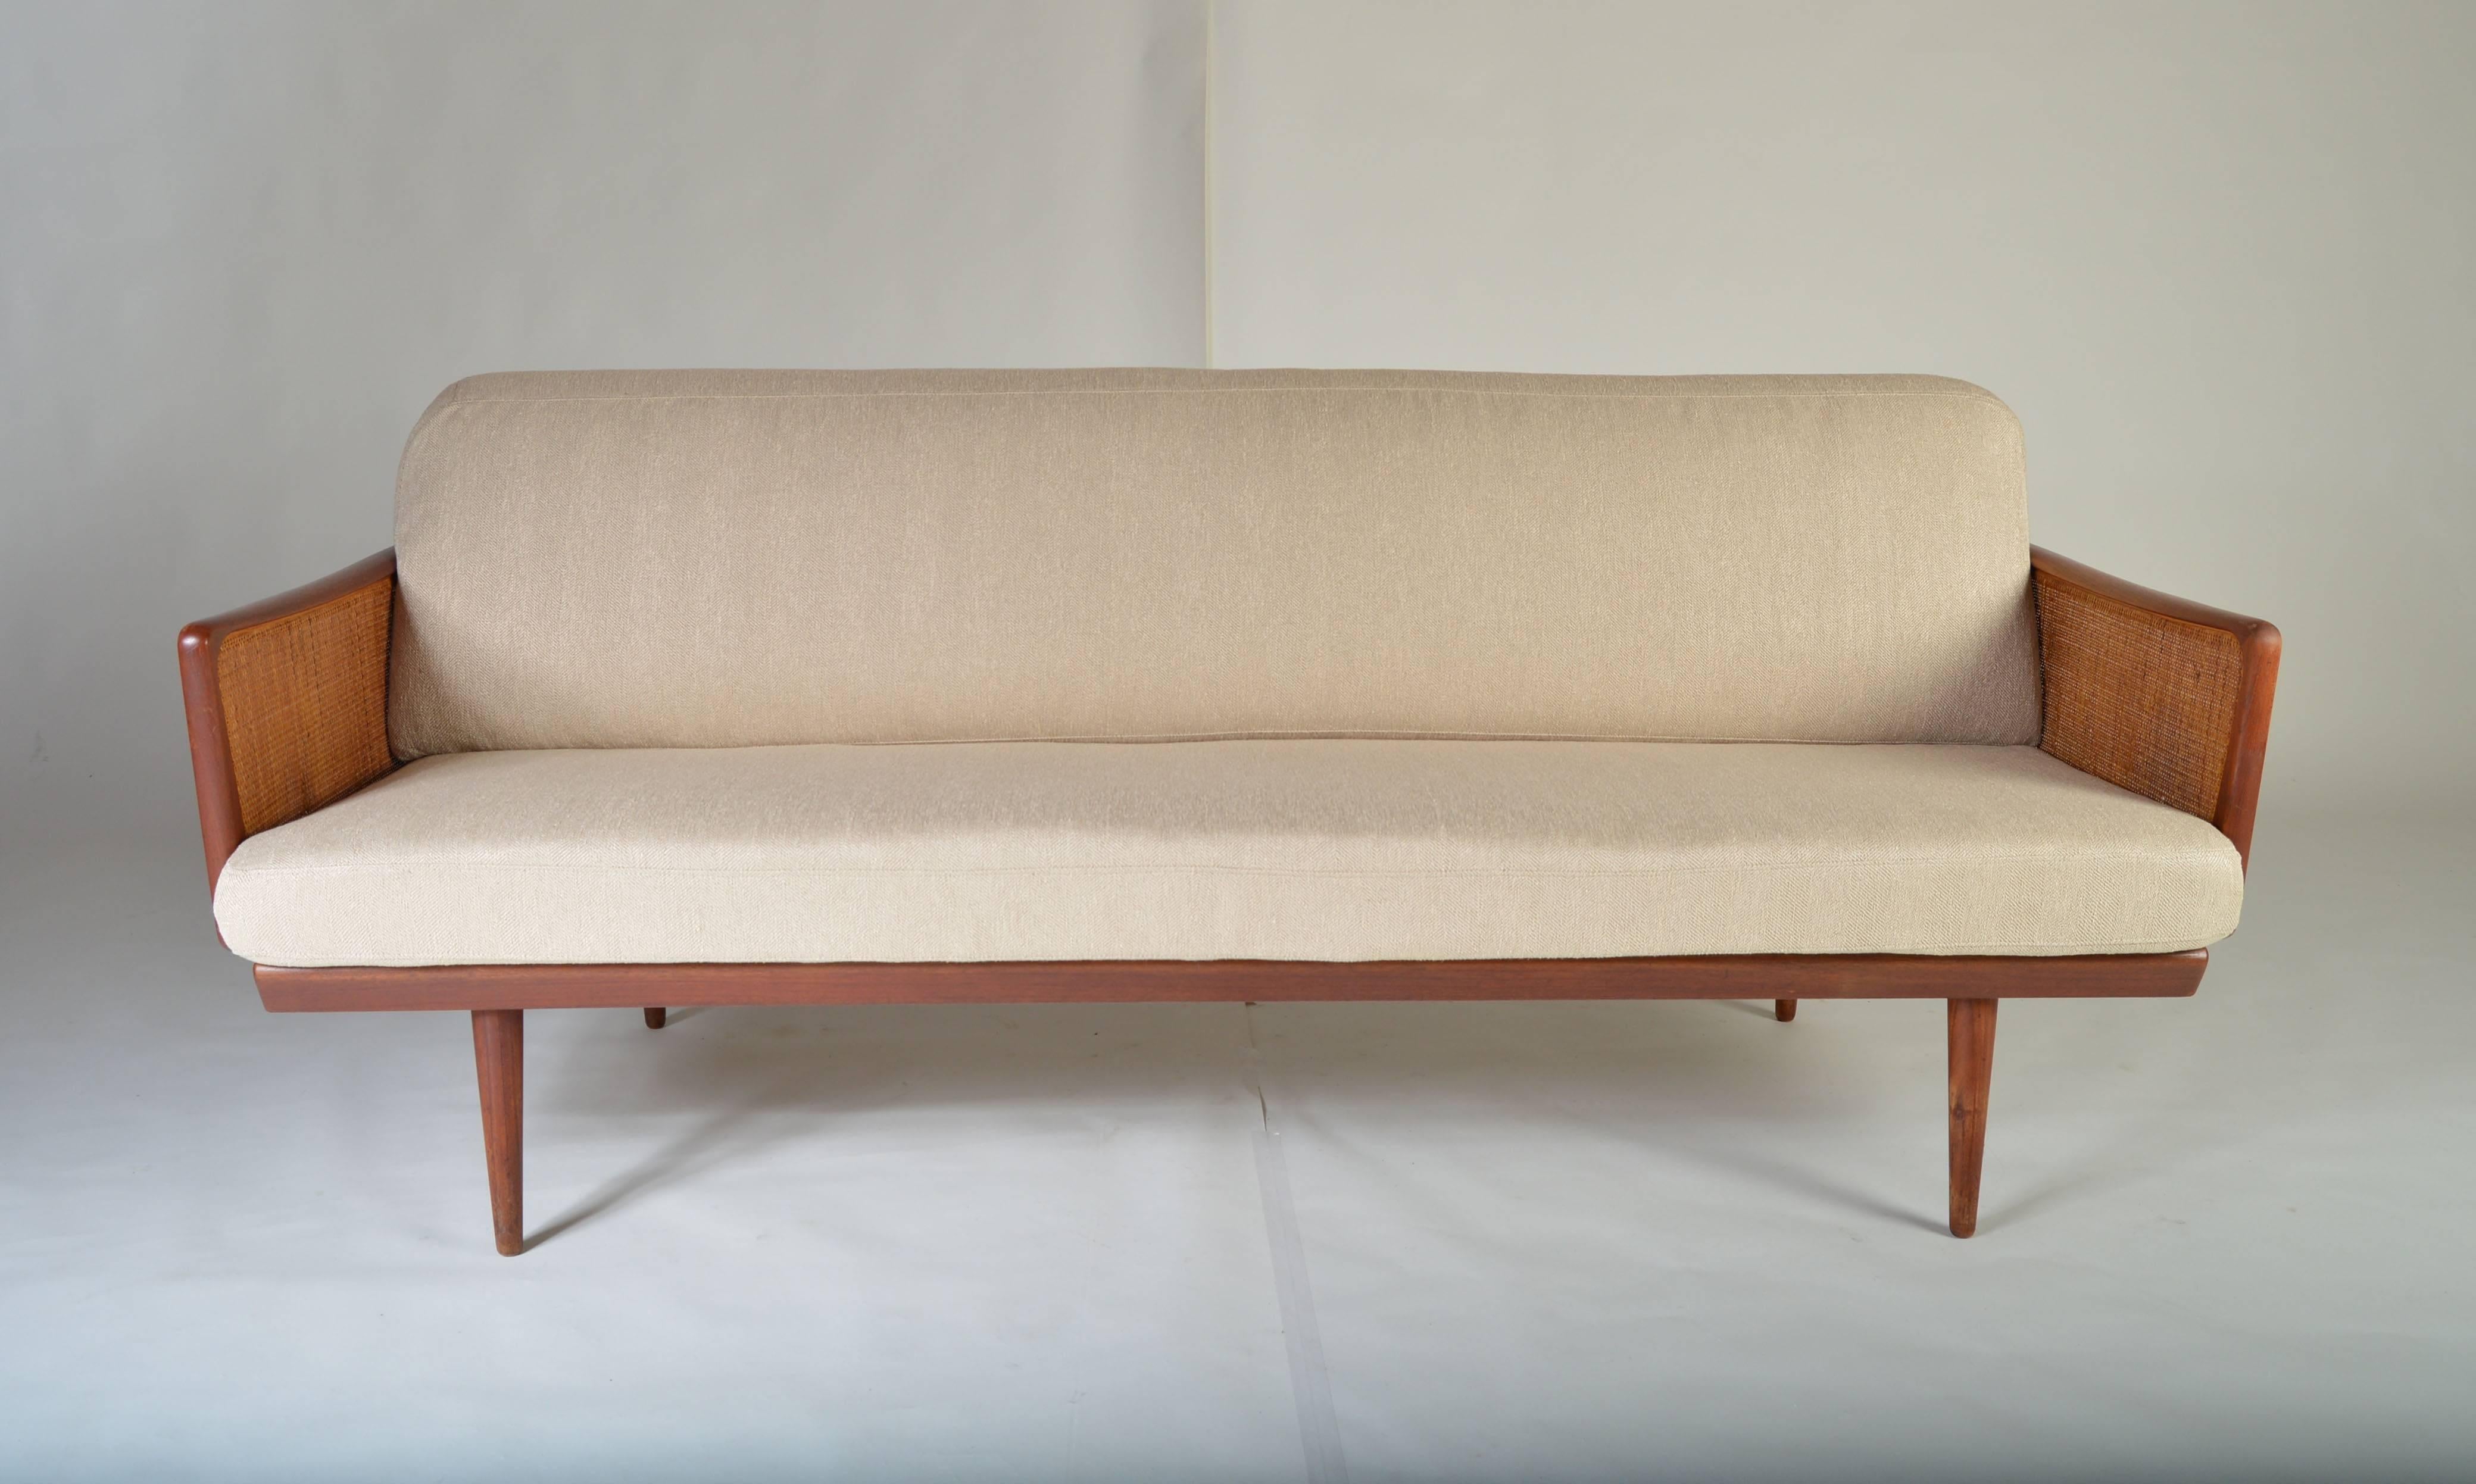 A full length sofa framed in teak and cane designed by Peter Hvidt.